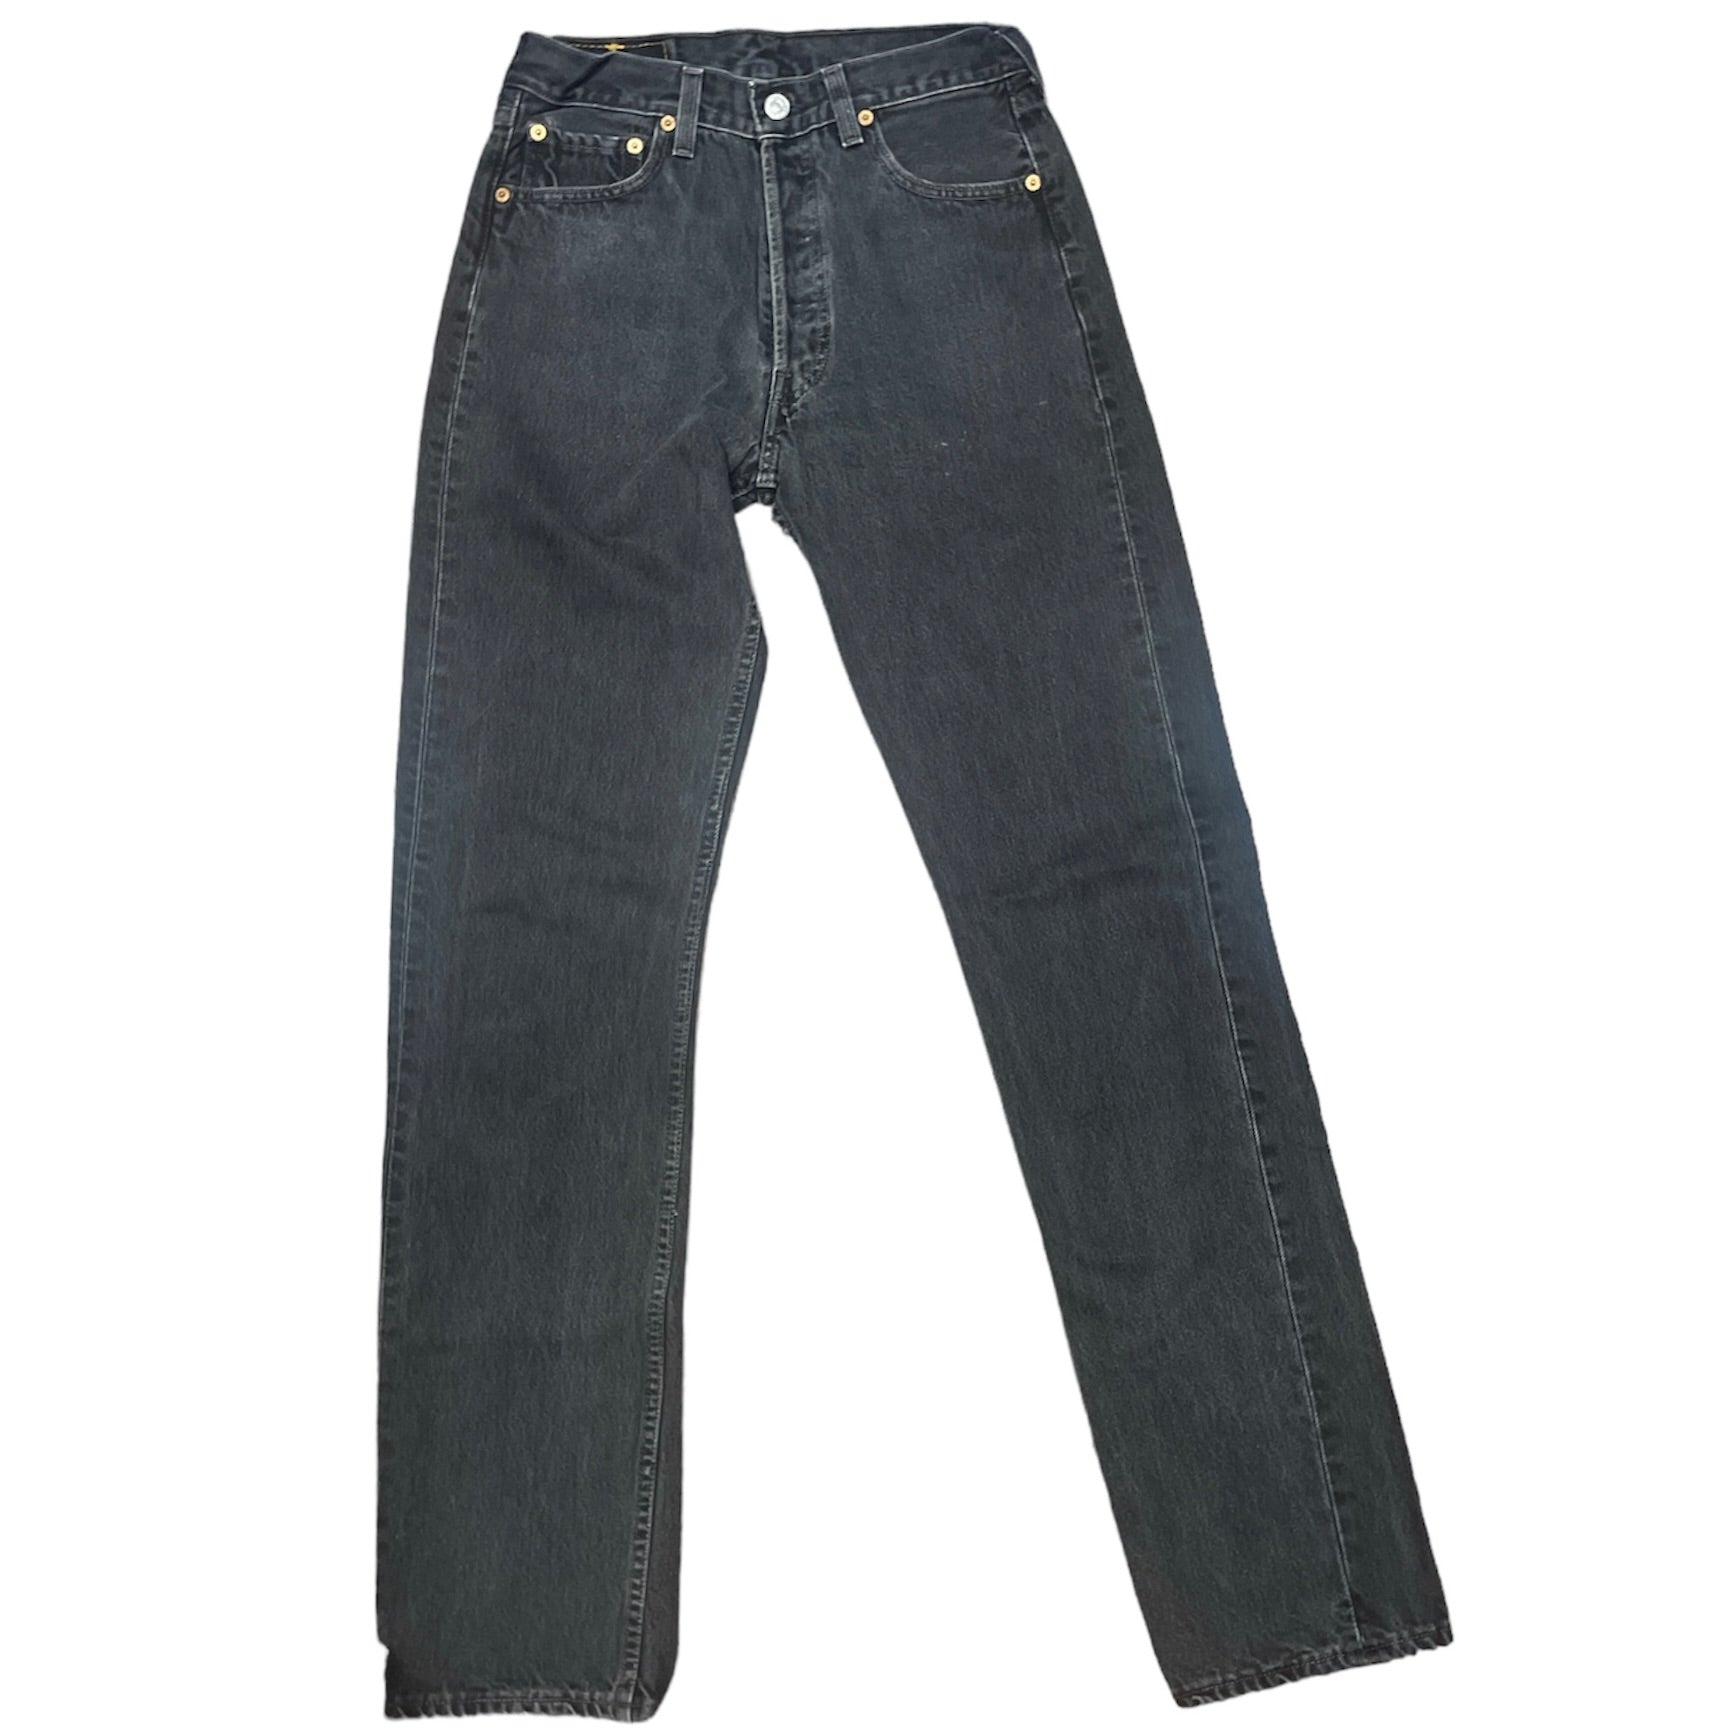 Vintage Levis 501 Black Jeans (W29/L36)